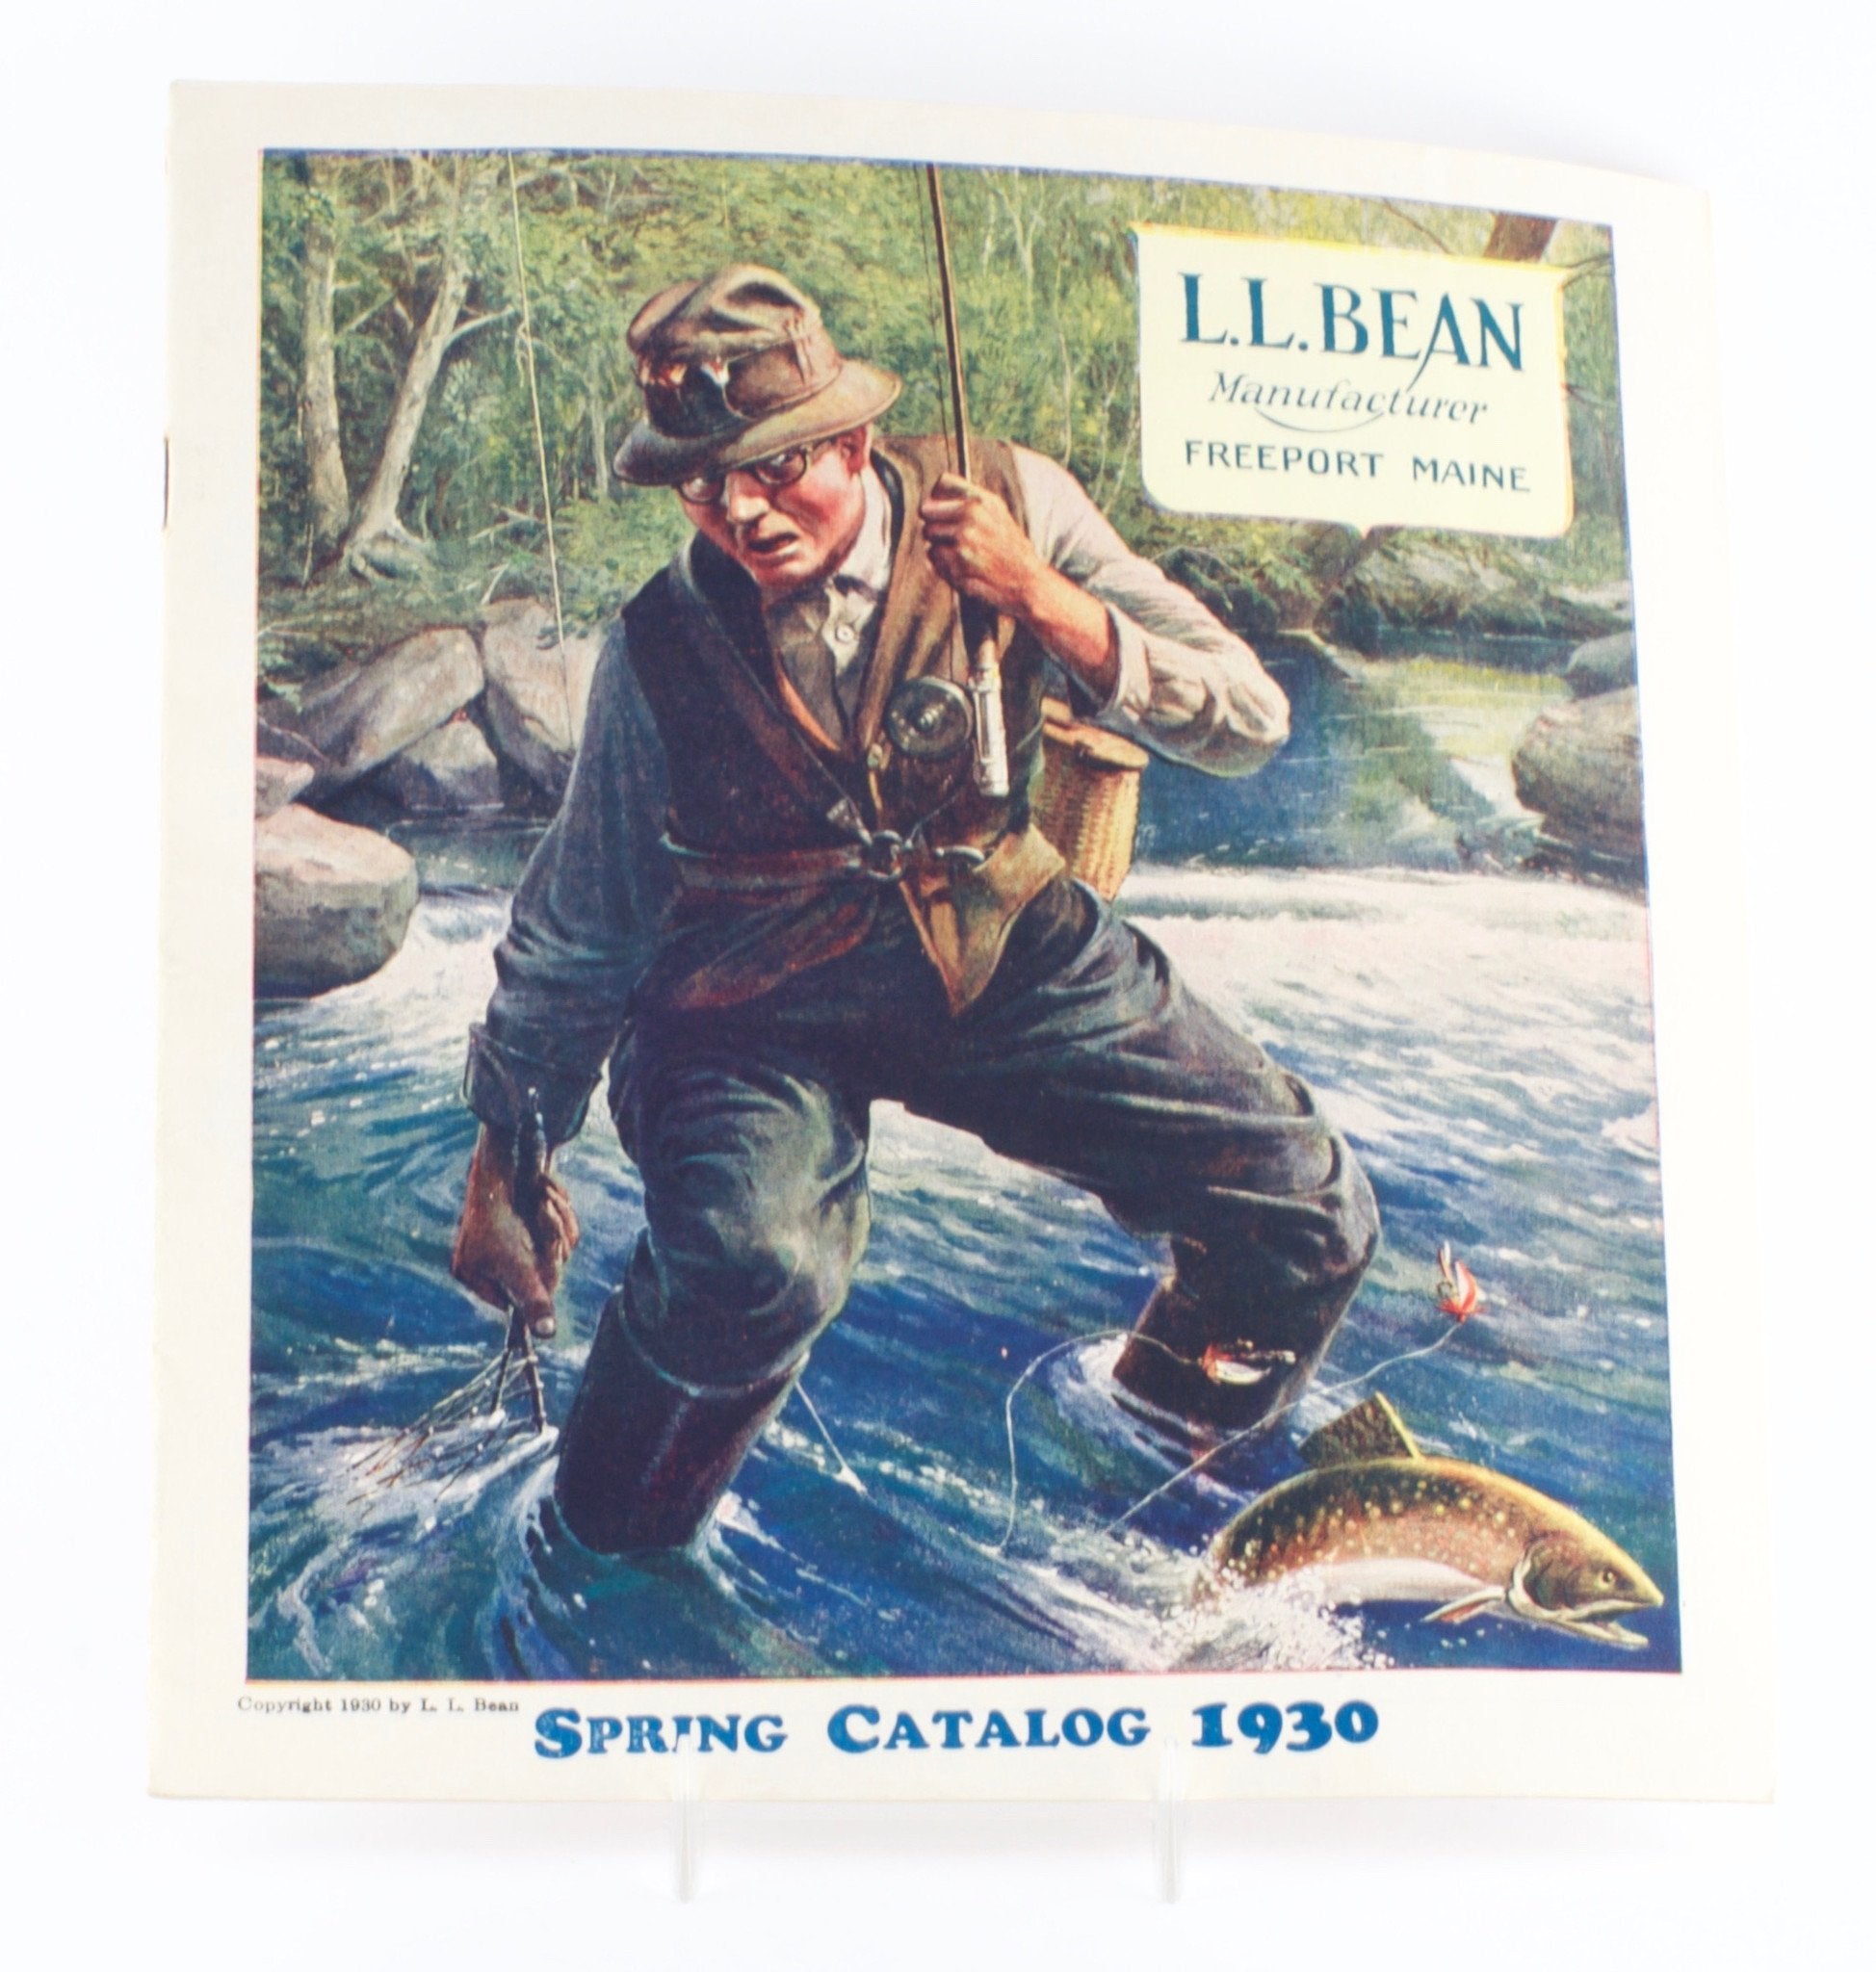 L.L. Bean Catalog 1930 - Spinoza Rod Company